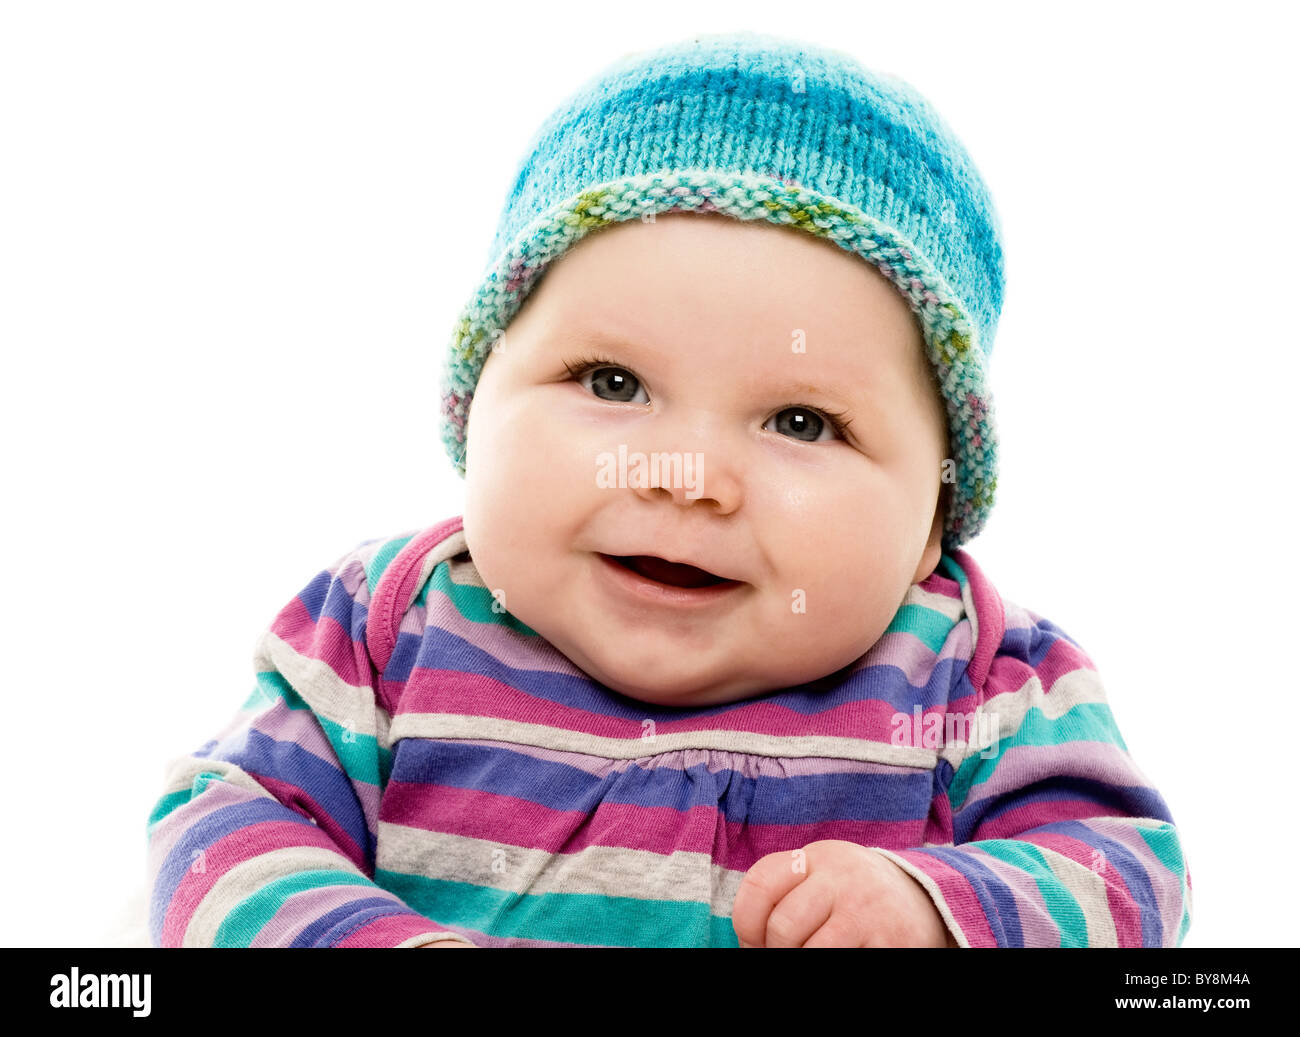 Kopf- und Schulteraufnahme eines kaukasischen Babys in einem knallbunten gestreifte Outfit und türkisfarbenem Hut Stockfoto